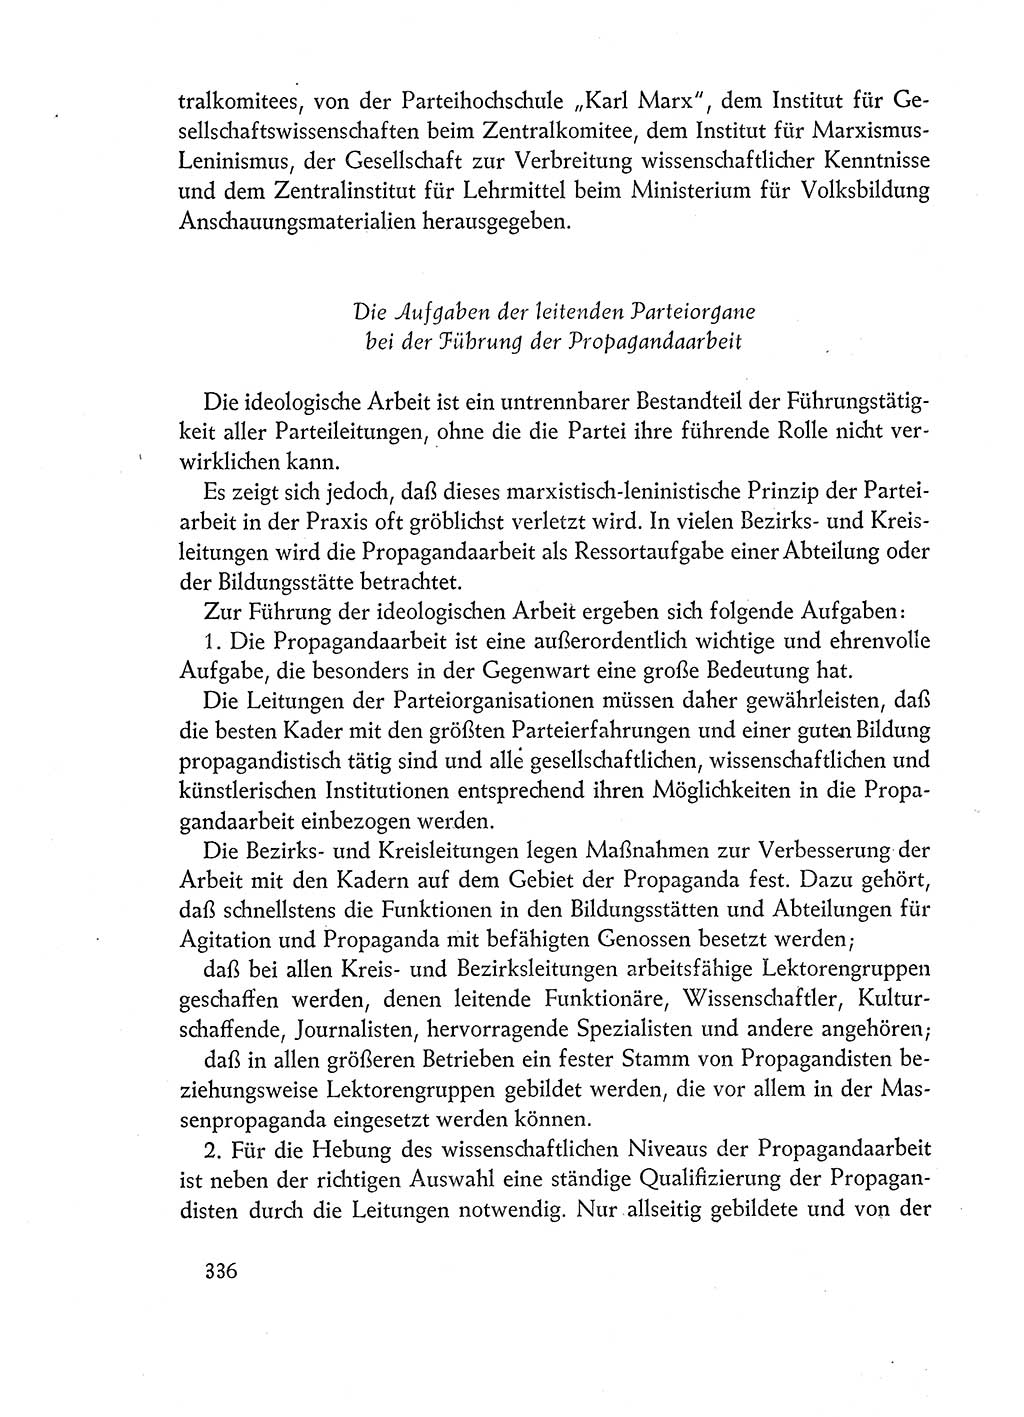 Dokumente der Sozialistischen Einheitspartei Deutschlands (SED) [Deutsche Demokratische Republik (DDR)] 1960-1961, Seite 336 (Dok. SED DDR 1960-1961, S. 336)